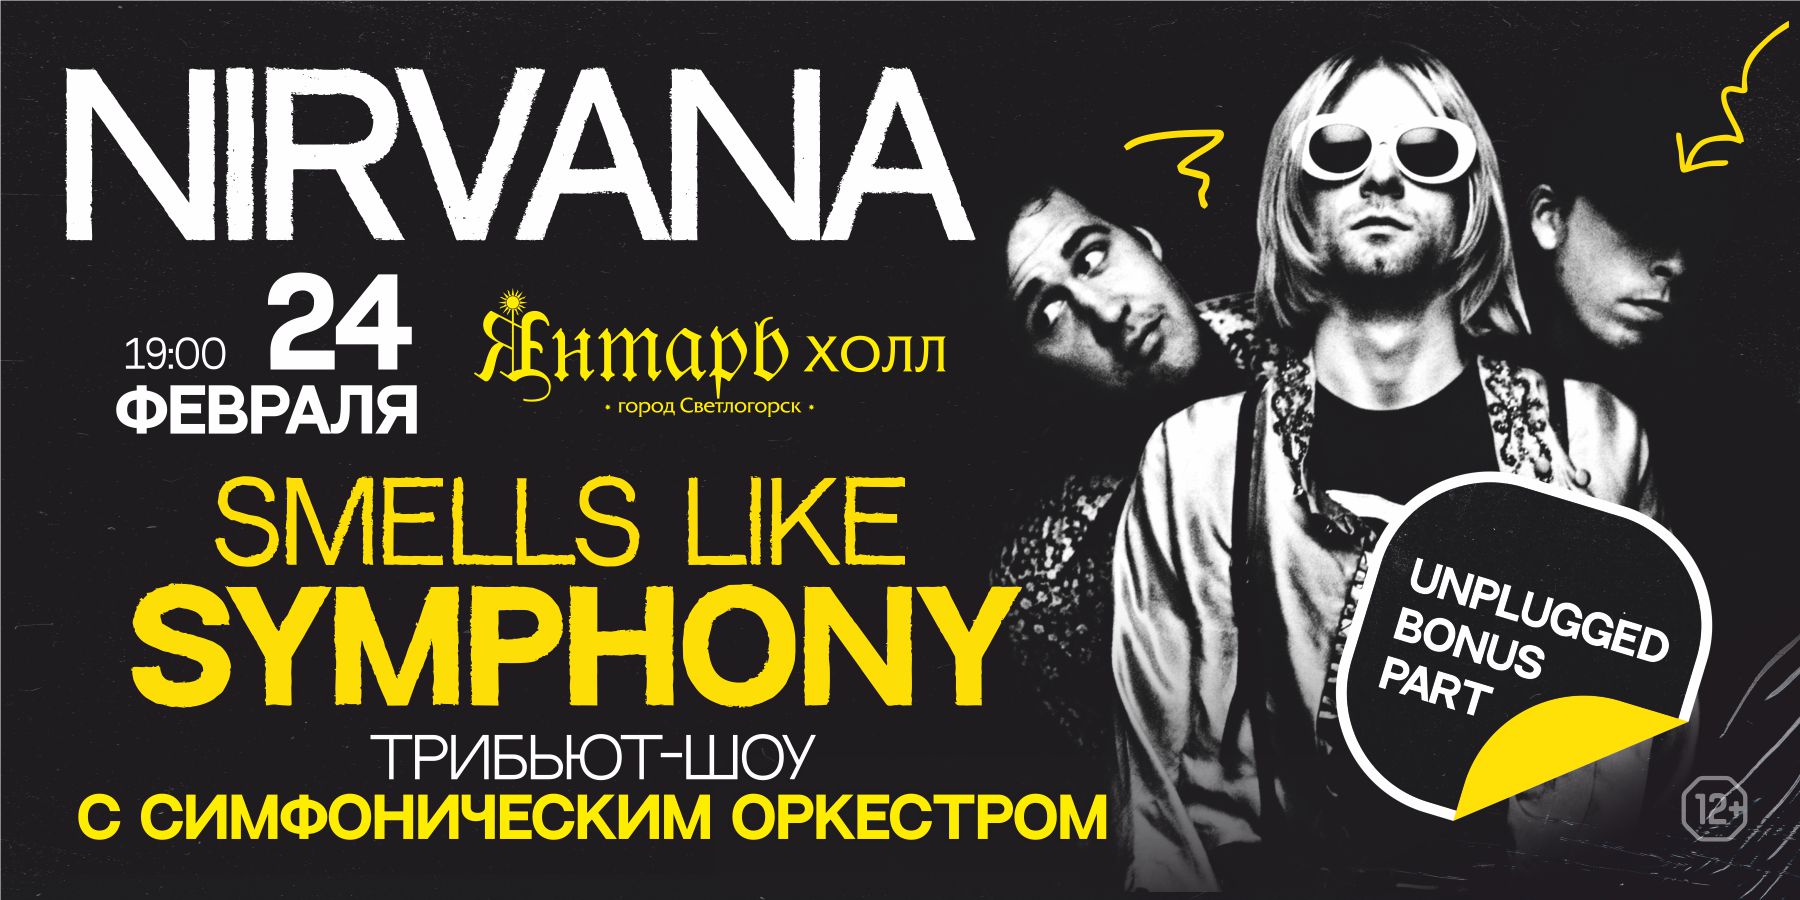 Smells Like Symphony. Nirvana Tribute Show с симфоническим оркестром